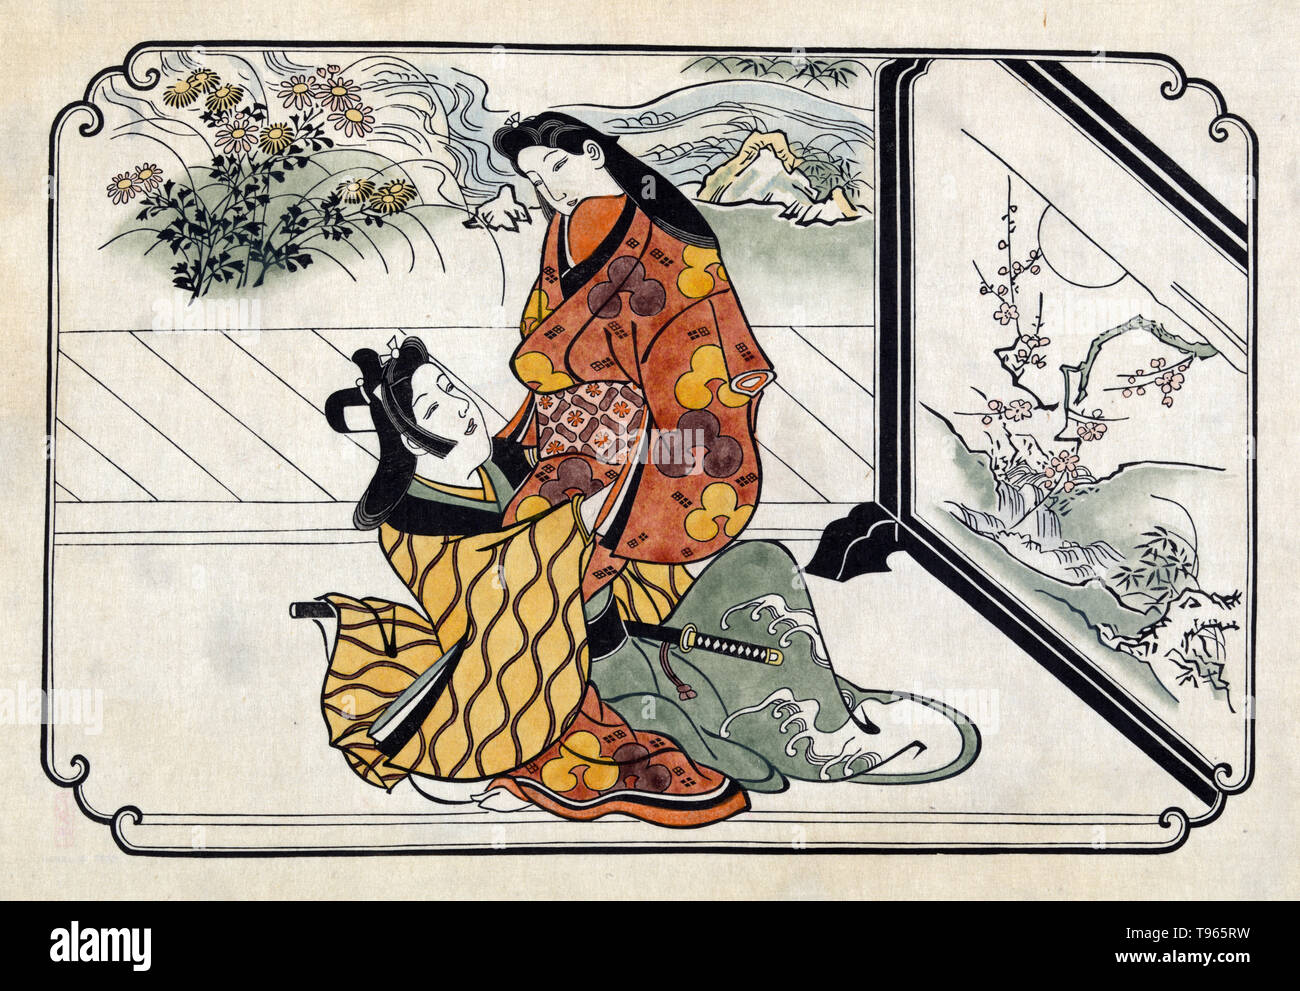 Zwei liebende Umarmung vor einem gemalten Bild. Ukiyo-e (Bilder der fließenden Welt) ist ein Genre der japanischen Kunst, die vom 17. bis 19. Jahrhundert blühte. Ukiyo-e war zentral für die Wahrnehmung des Westens für Japanische Kunst im späten 19. Jahrhundert. Aus den 1870er Jahren Japonismus zu einem bedeutenden Trend und hatte einen starken Einfluss auf die frühen Impressionisten, sowie Post-Impressionists und Jugendstil Künstler. Stockfoto